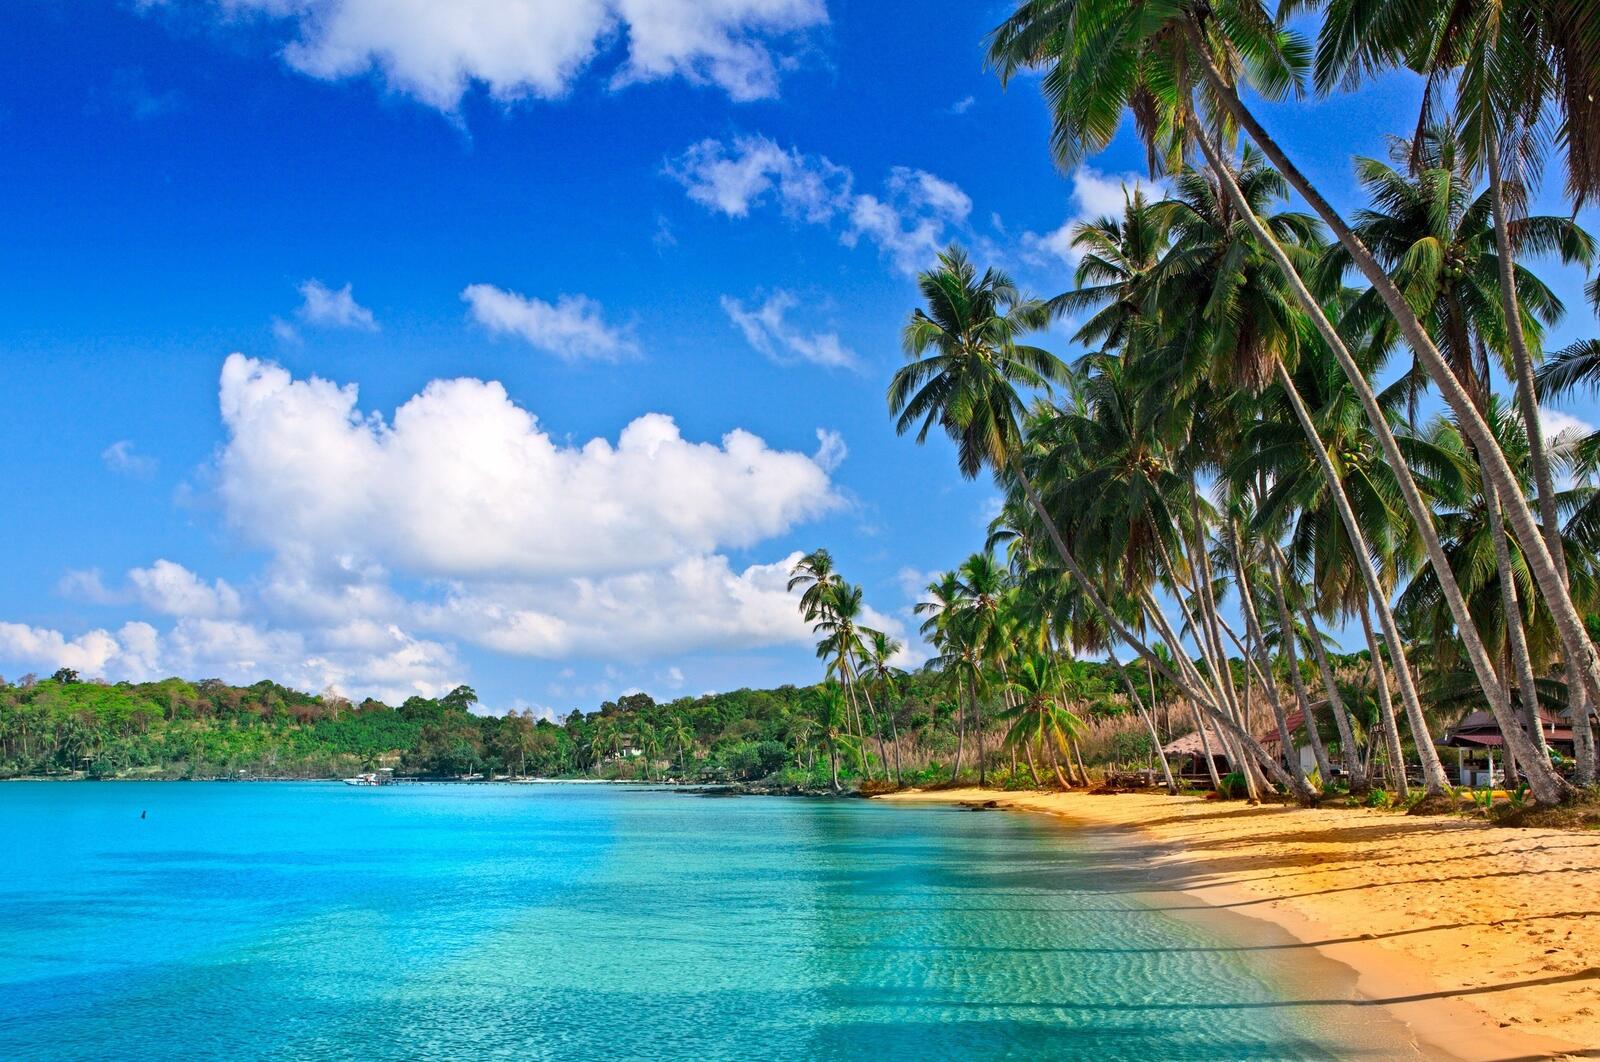 Бесплатное фото Песчаный желтый пляж с пальмами у голубого моря